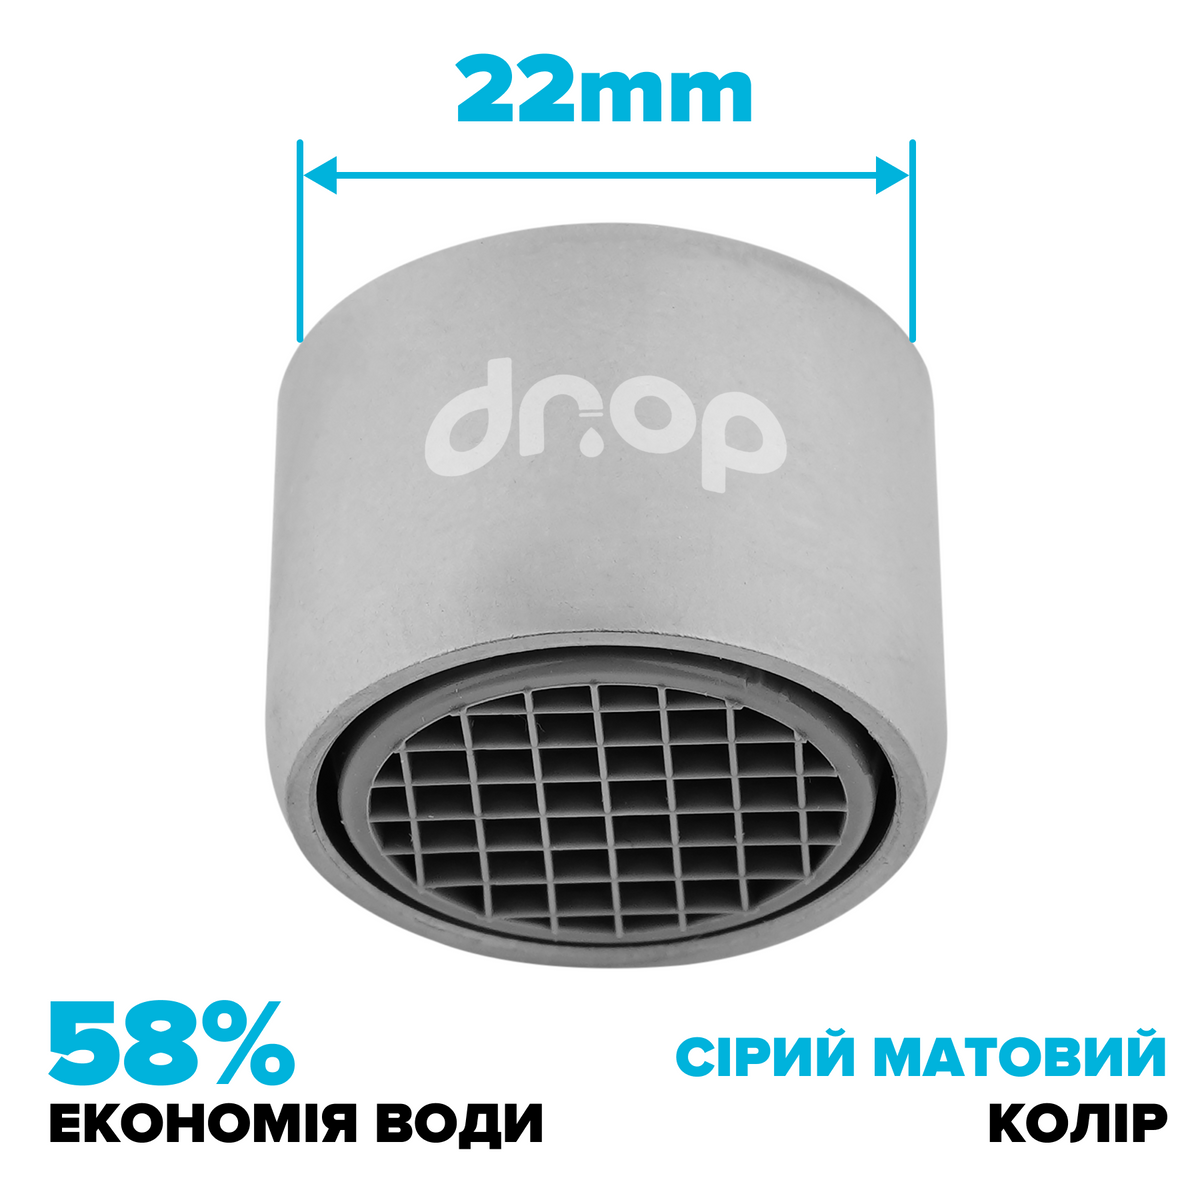 Водосберегающий аэратор DROP CL22-MT для смесителя - Экономия 58%, внутренняя F 22 мм, матовый хром